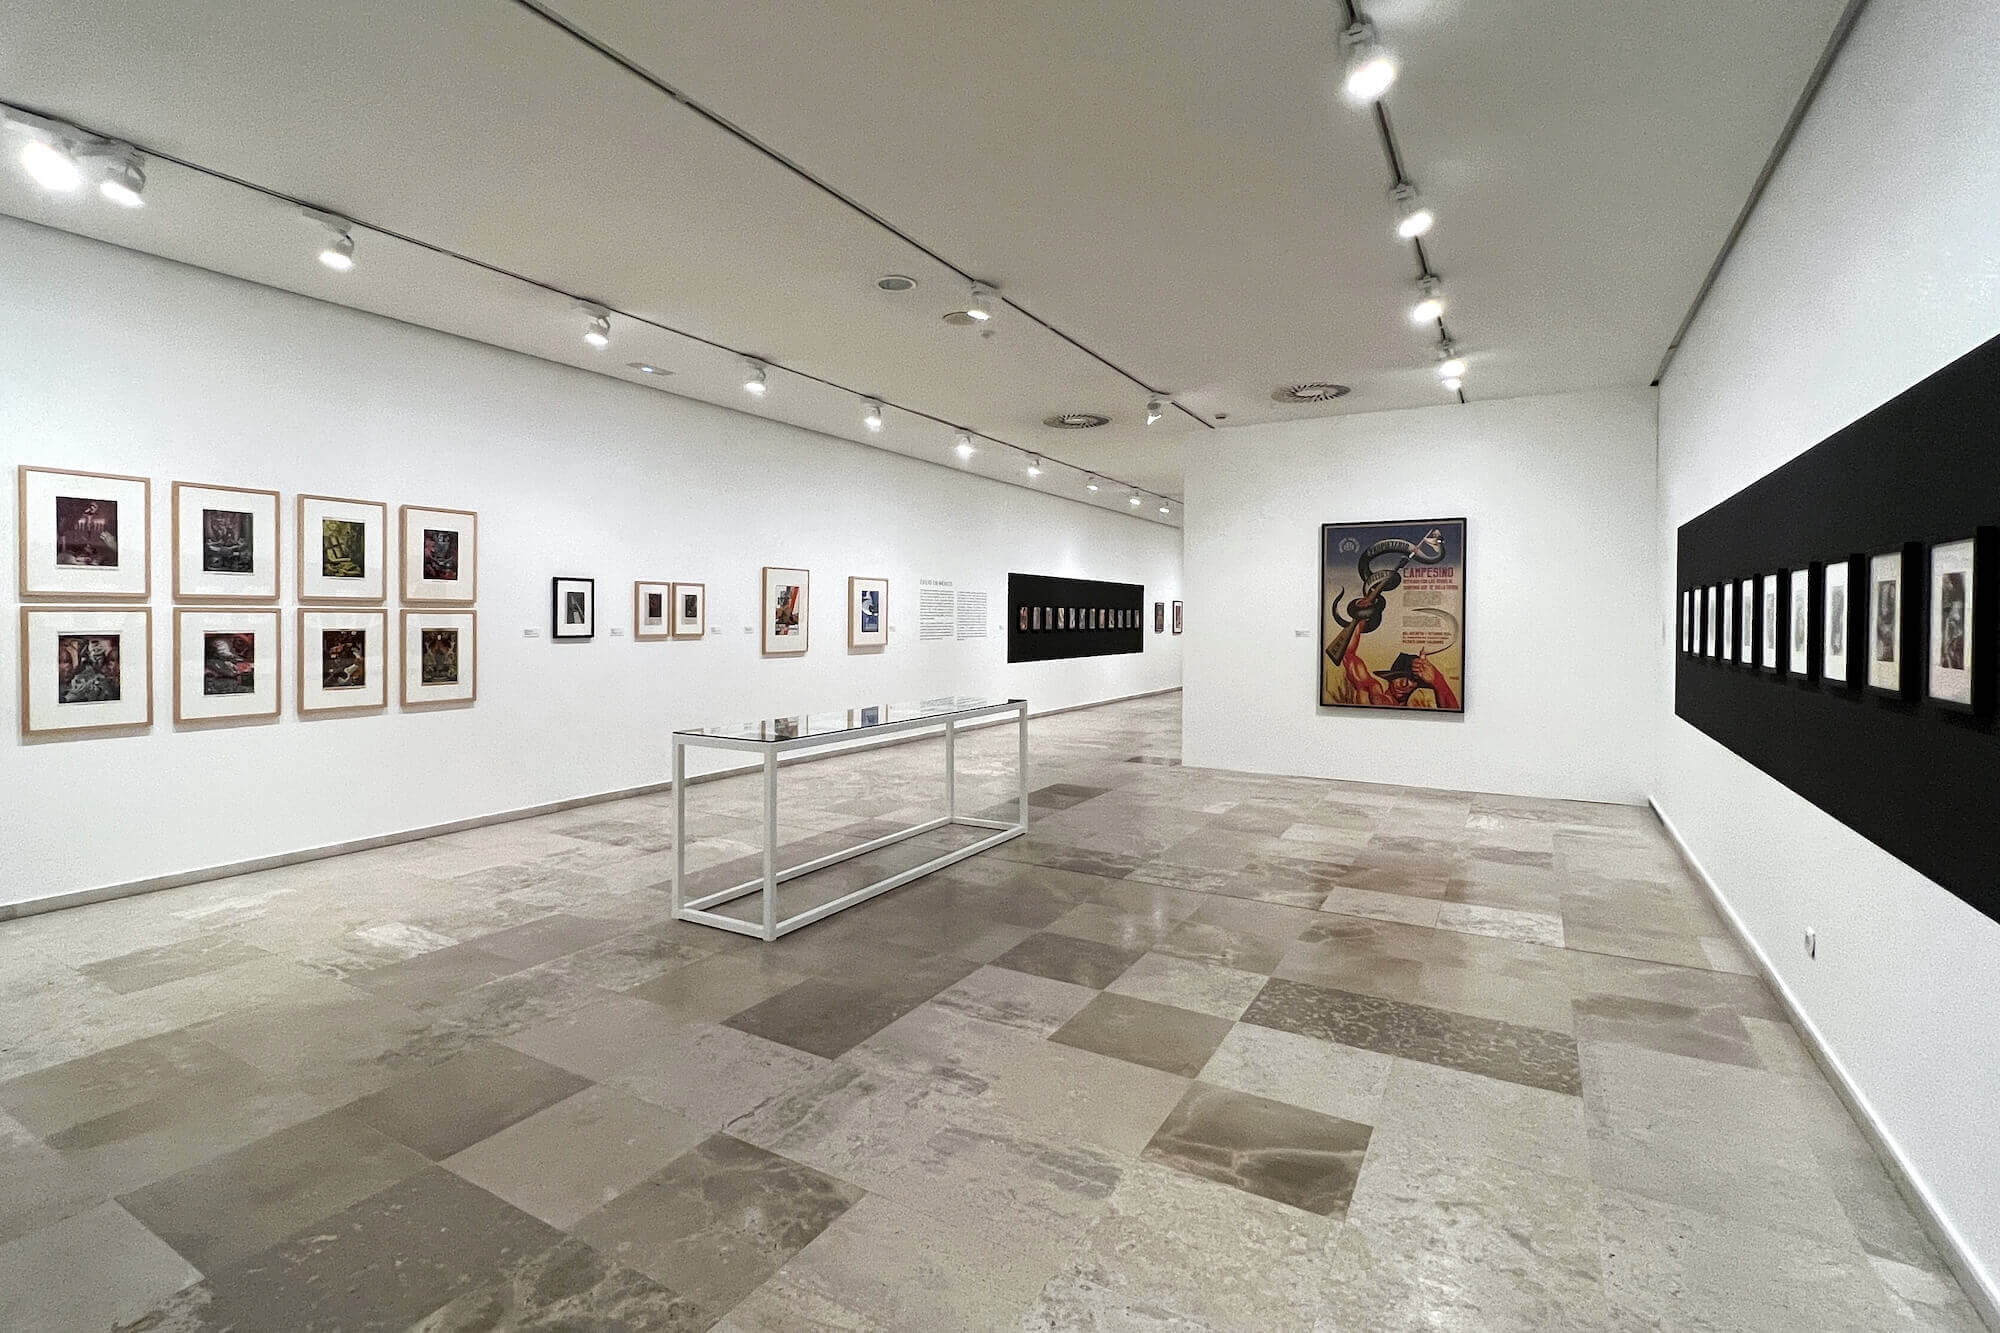 Er stellte seine Arbeit in den Dienst des sozialen Wandels: Eine Ausstellung beleuchtet jetzt die politischen Werke des Künstlers Josep Renau.